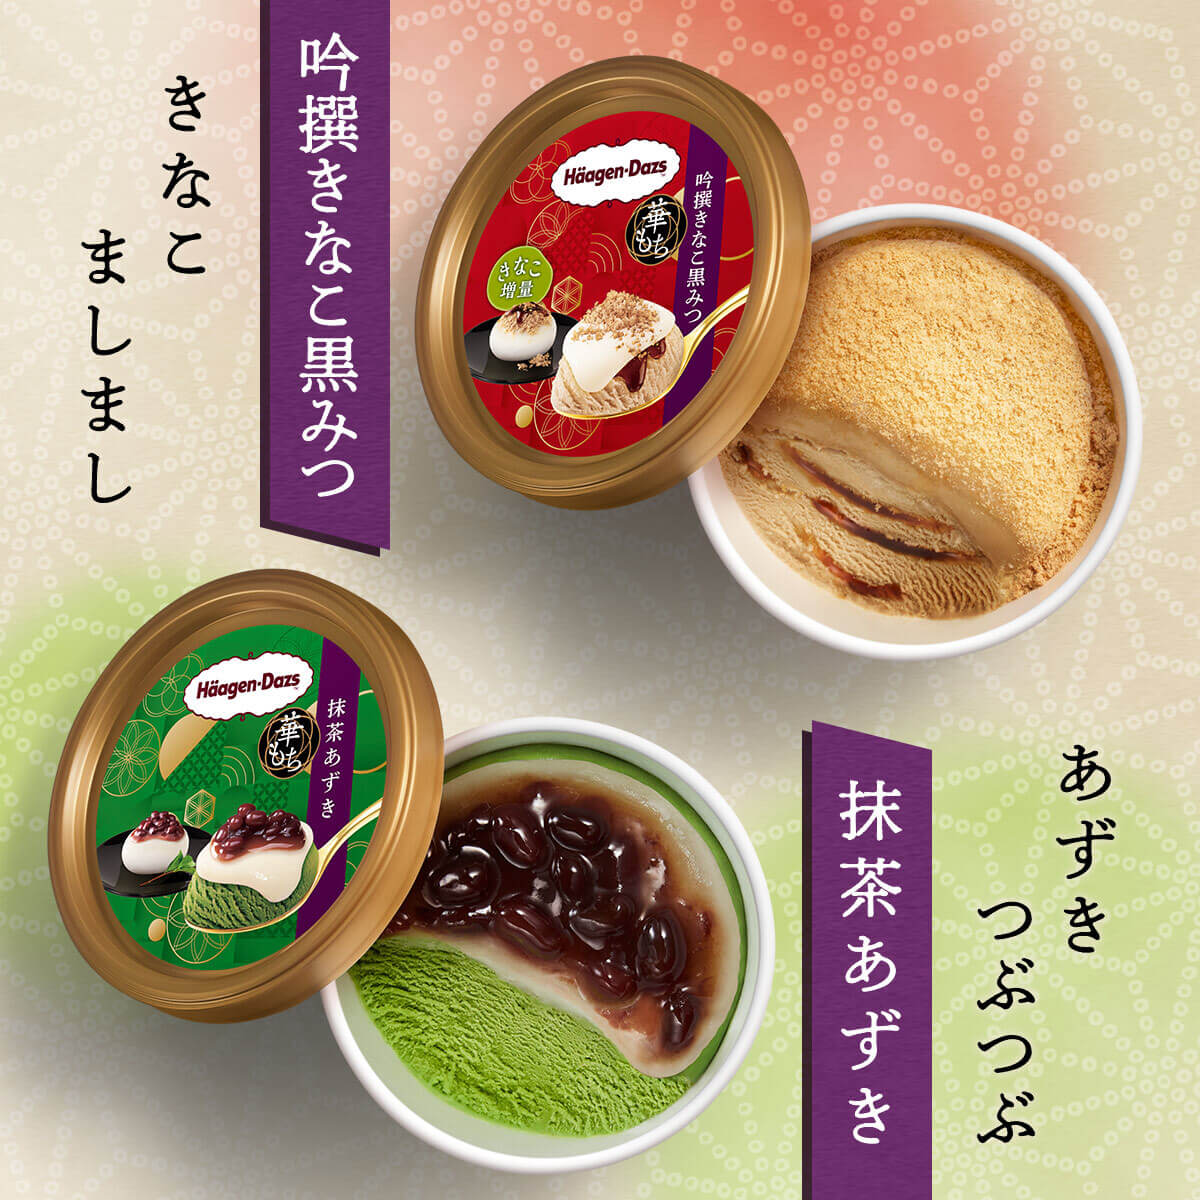 饮料 / 食品 简单 高级感 / 漂亮 性感 日式Banner设计